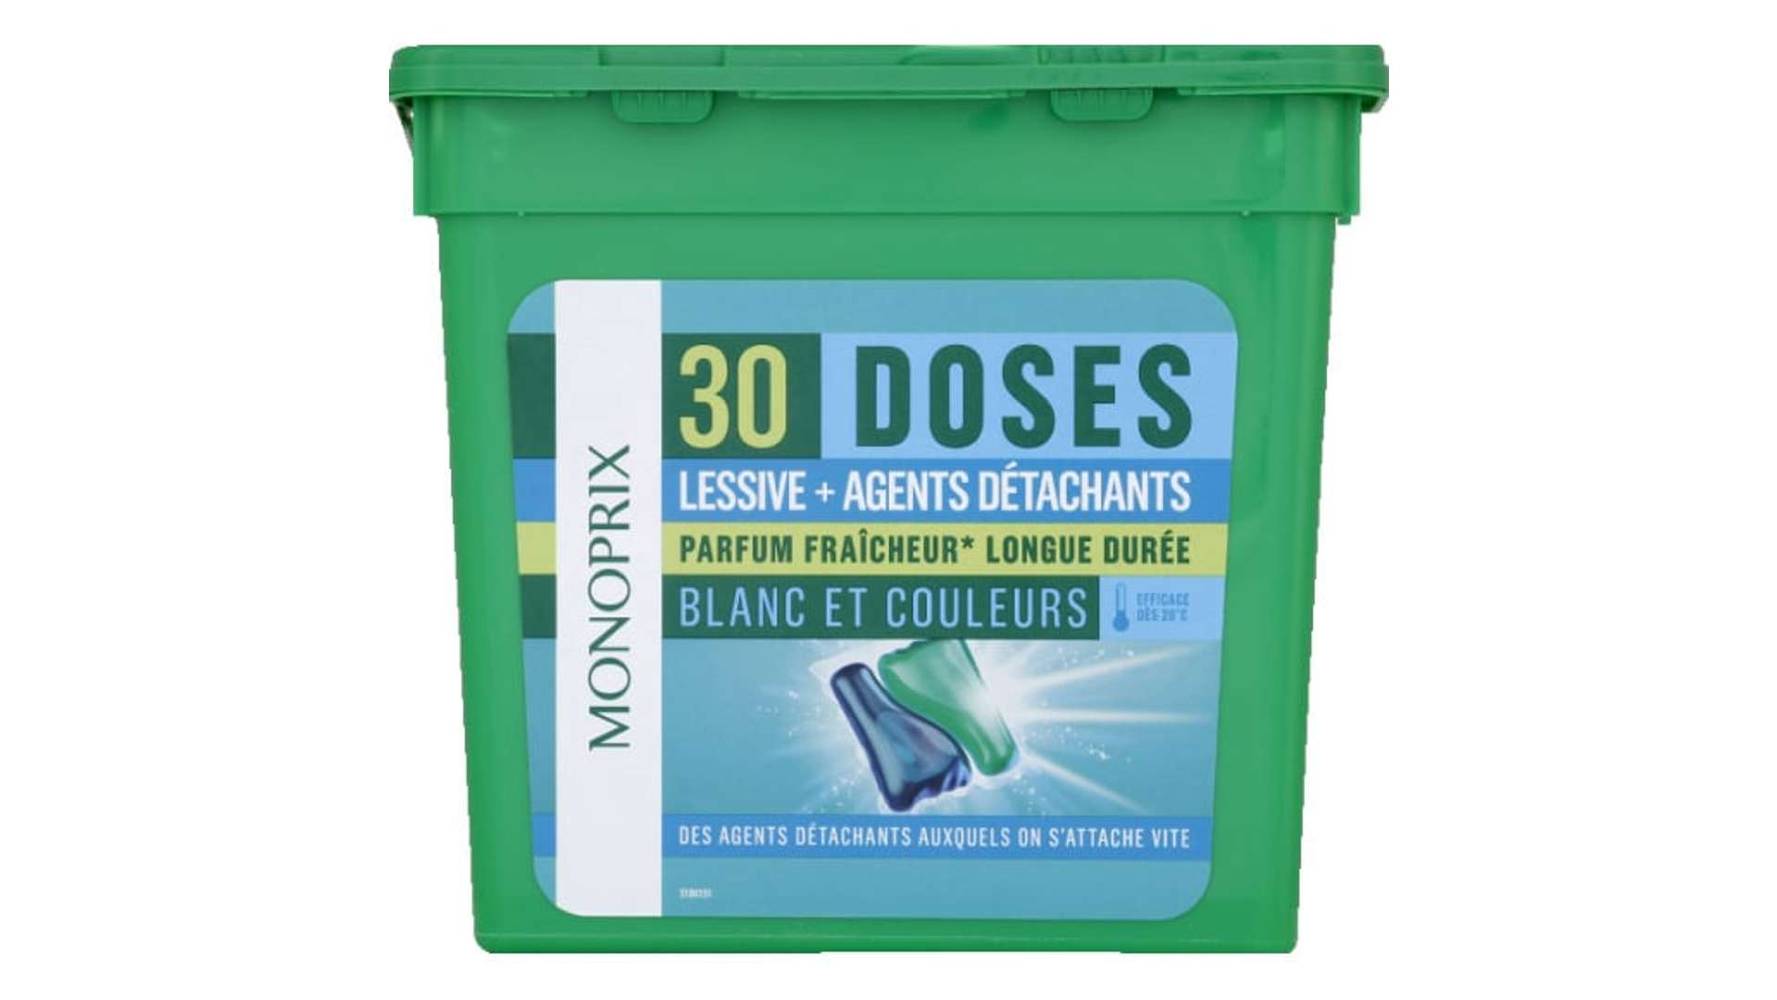 MONOPRIX Dodes 2 en 1 lessive + agents détachants, parfum fraîcheur longue durée Les 30 doses, 780g